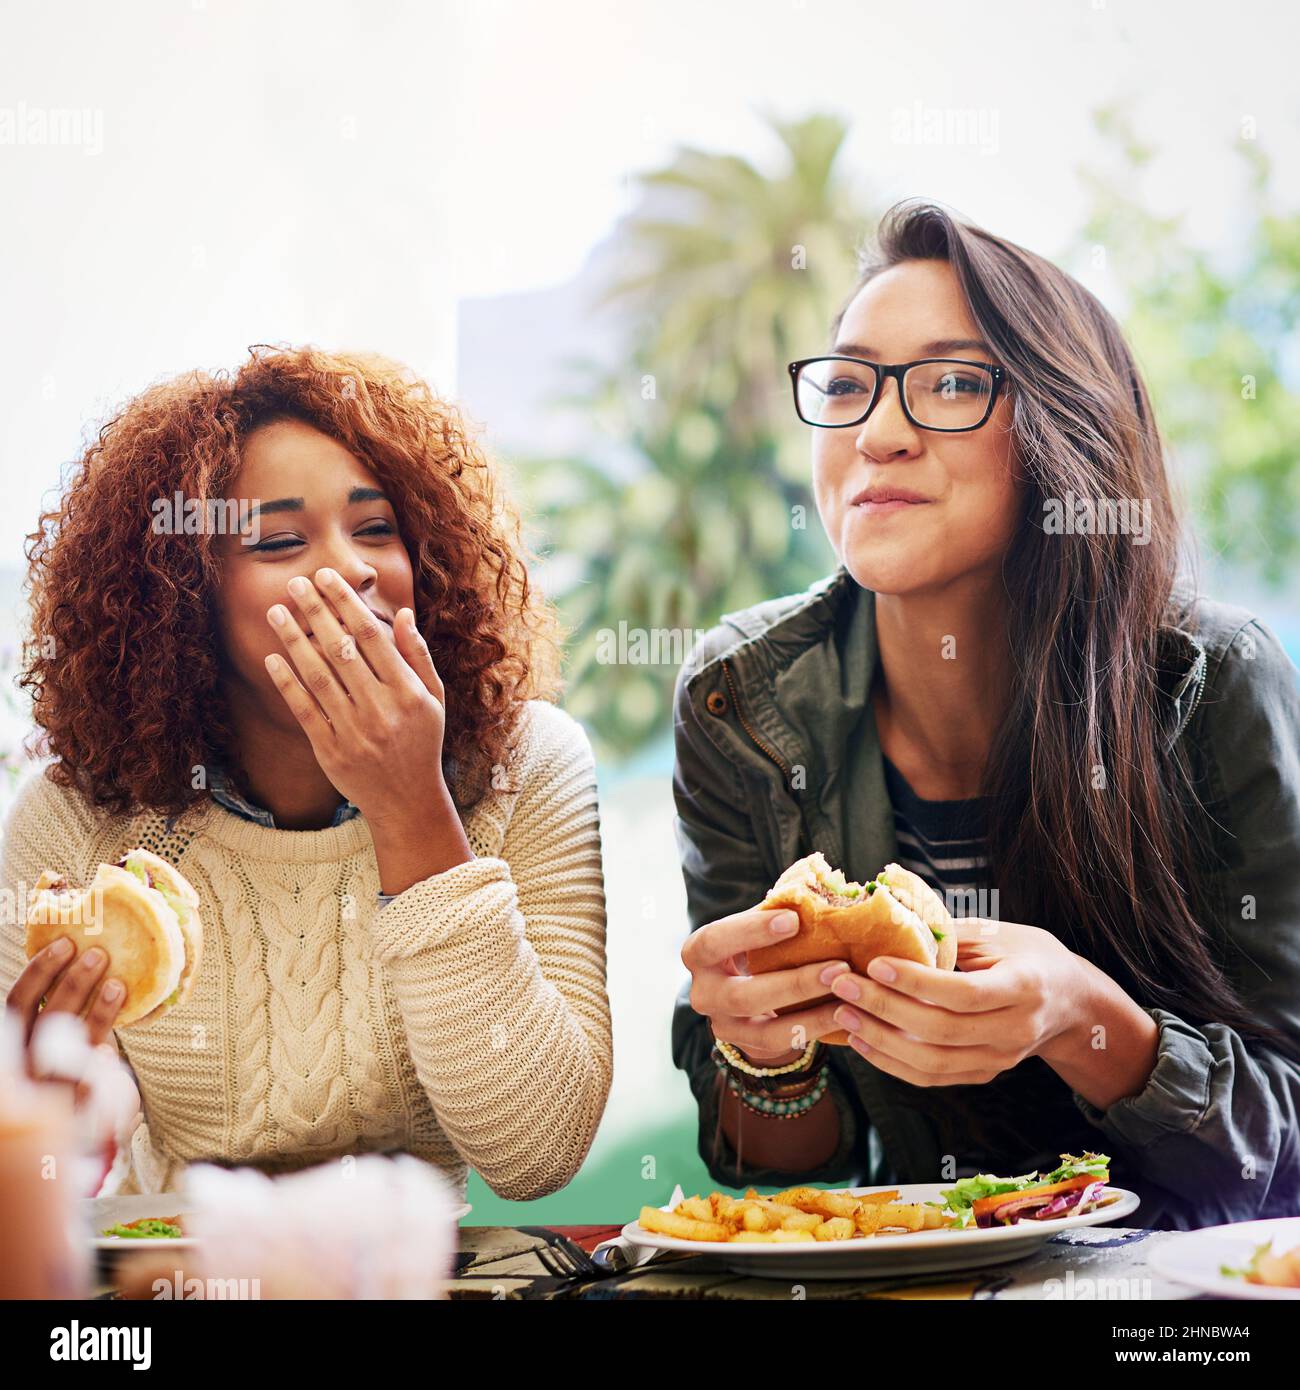 Partager de la bonne nourriture et de bonnes blagues. Photo de deux petites amies mangeant des hamburgers à l'extérieur. Banque D'Images